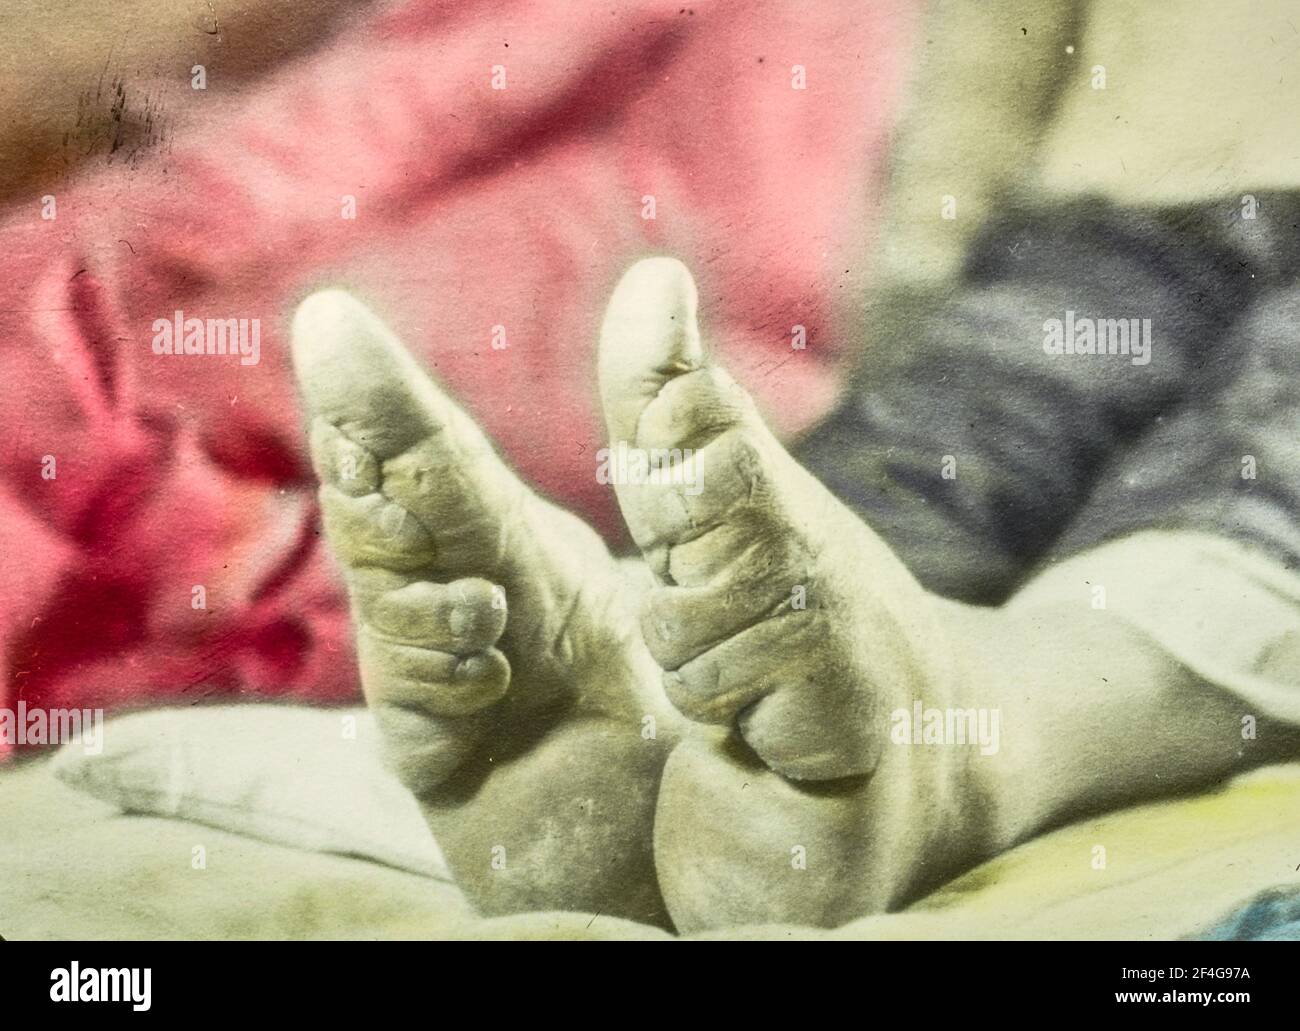 Nahaufnahmen der Füße eines weiblichen Kindes, die die Deformationswirkung der Fußbindung zeigen, die die Form und Größe der Füße einer Person veränderte und 1911, China, 1918, verboten wurde. Aus der Sammlung Sidney D. Gamble Photographs. () Stockfoto